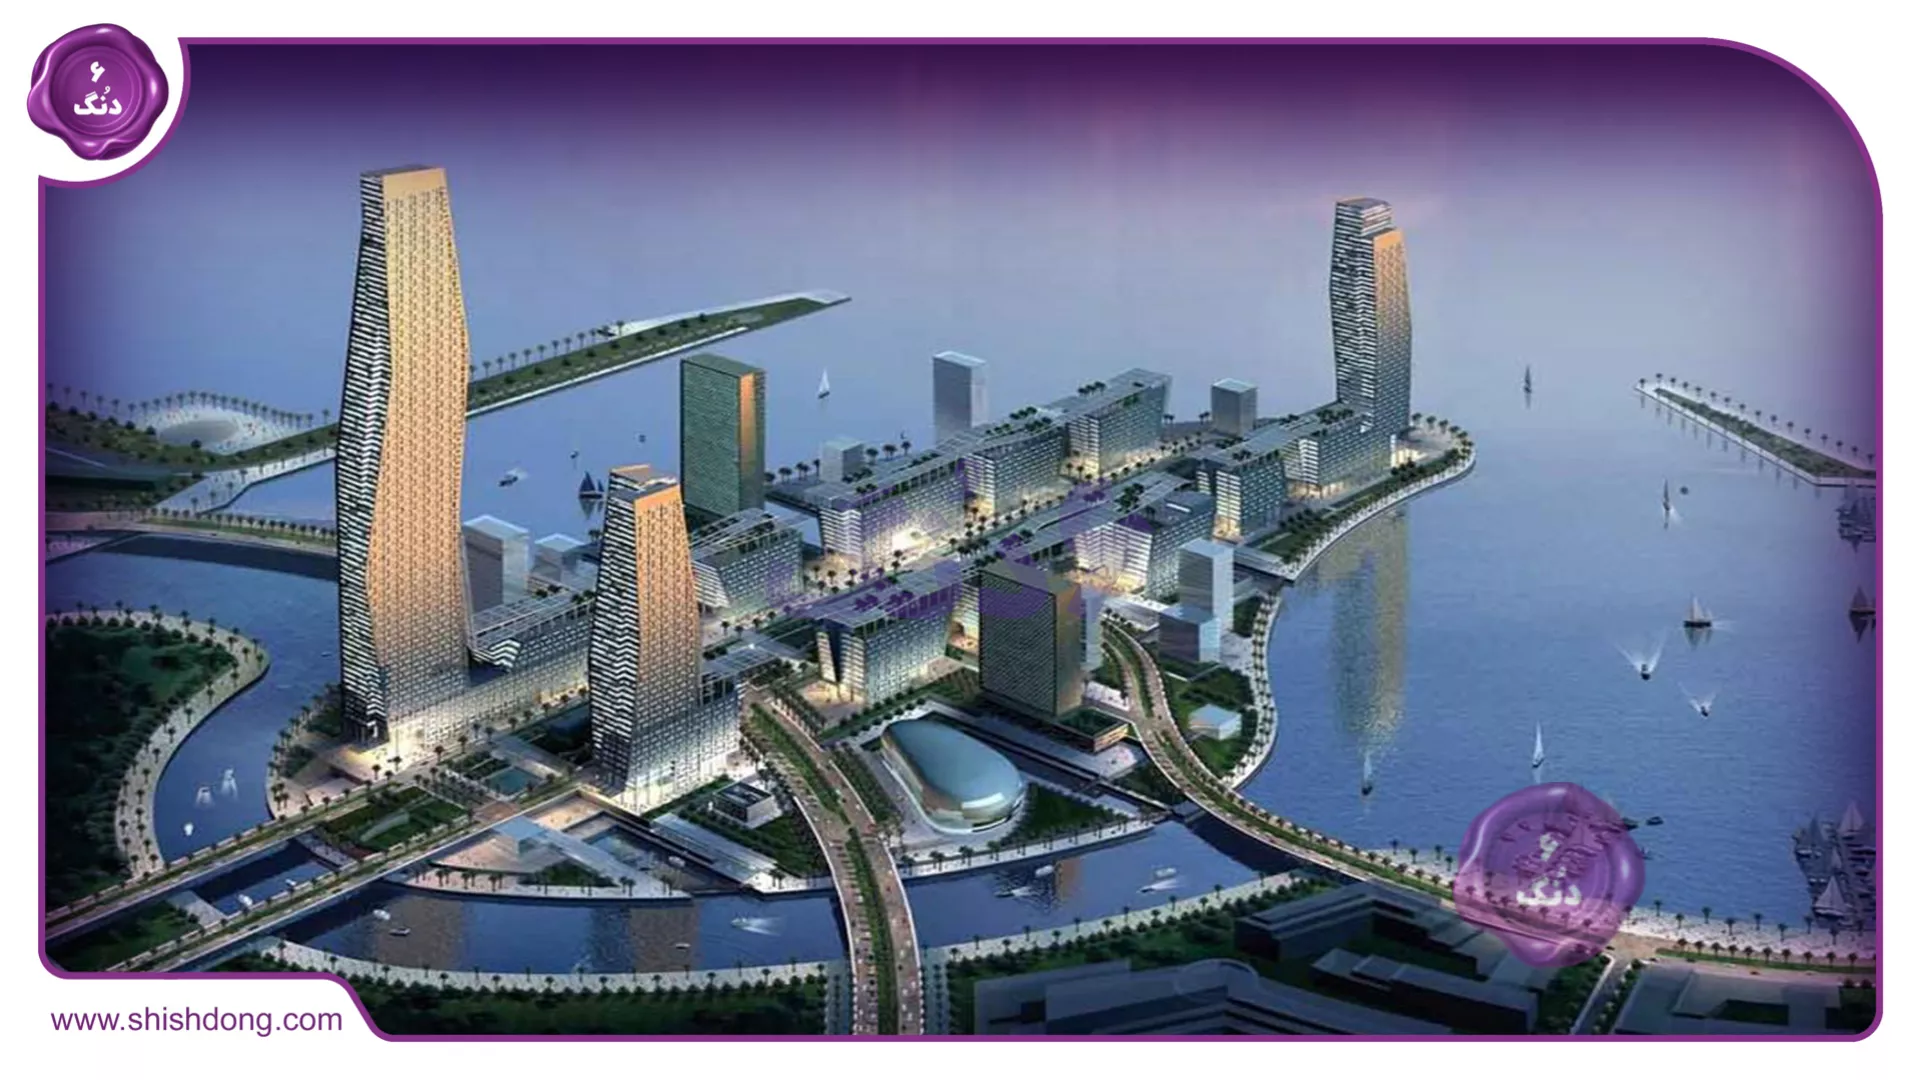 شهر های در حال توسعه عربستان